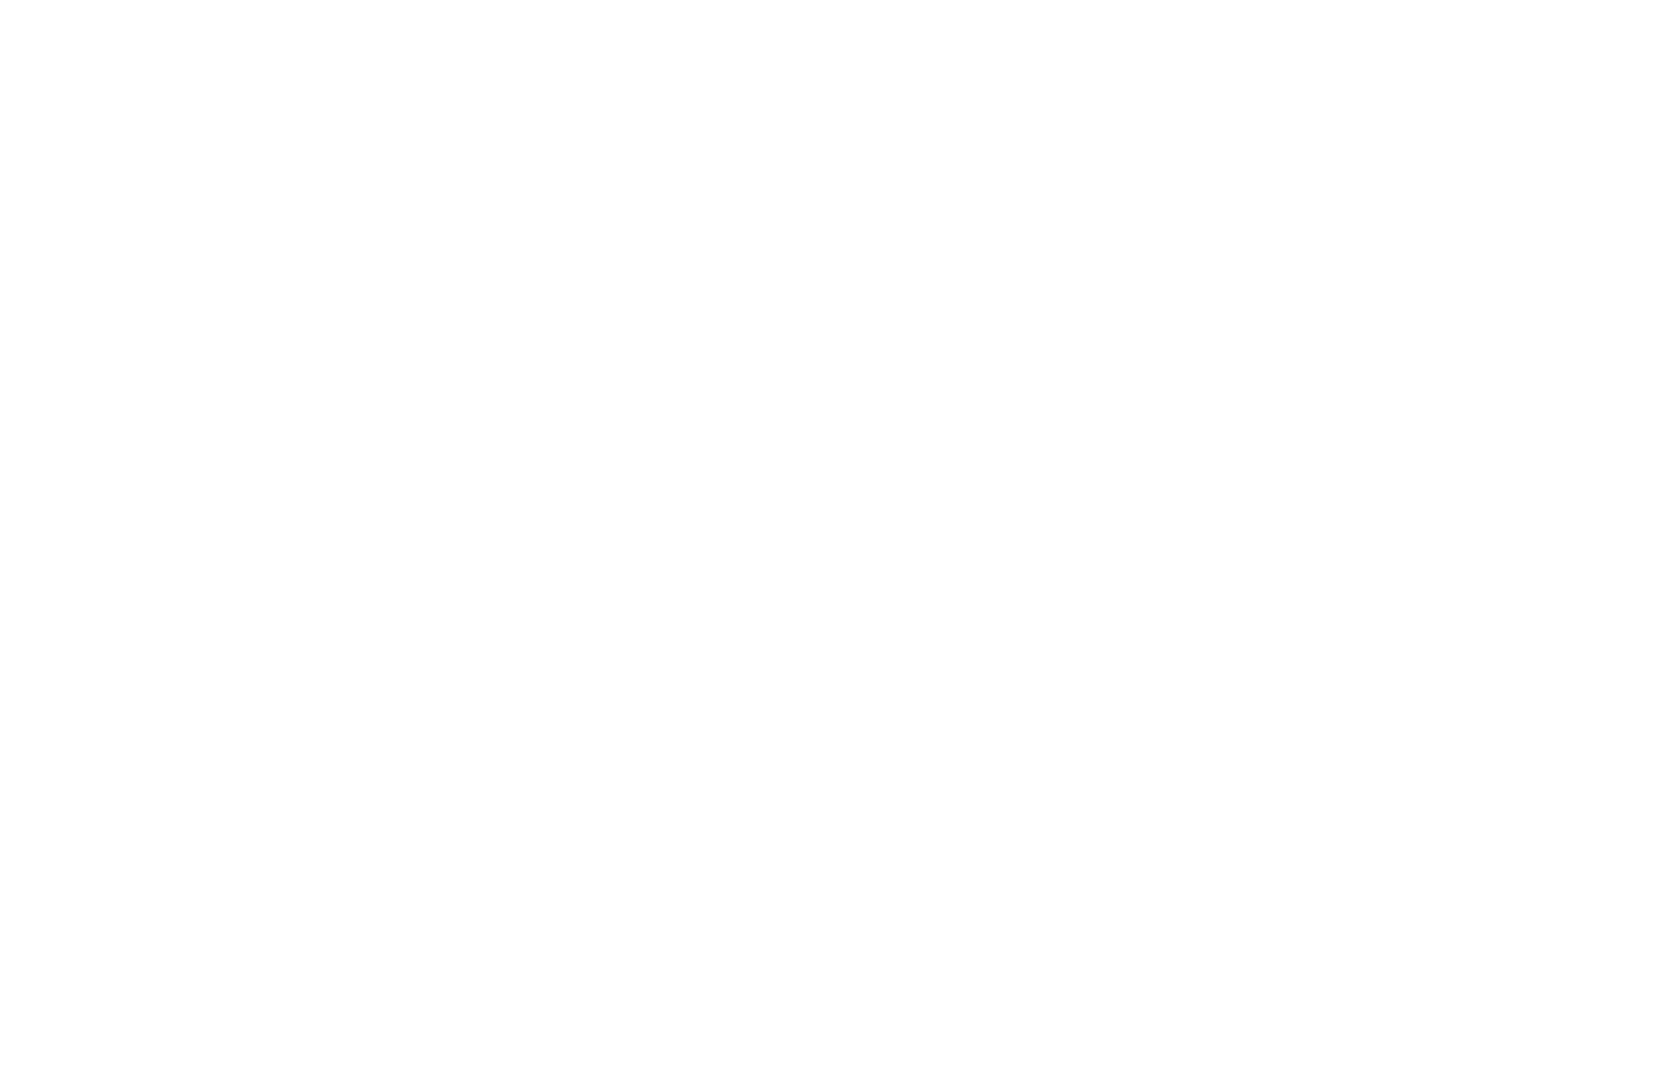 Страница с фамилией В. Н. Васильева из Списка осужденных Военным трибуналом 57 армии, 16 августа 1943 года. Фото: сайт «Память народа»